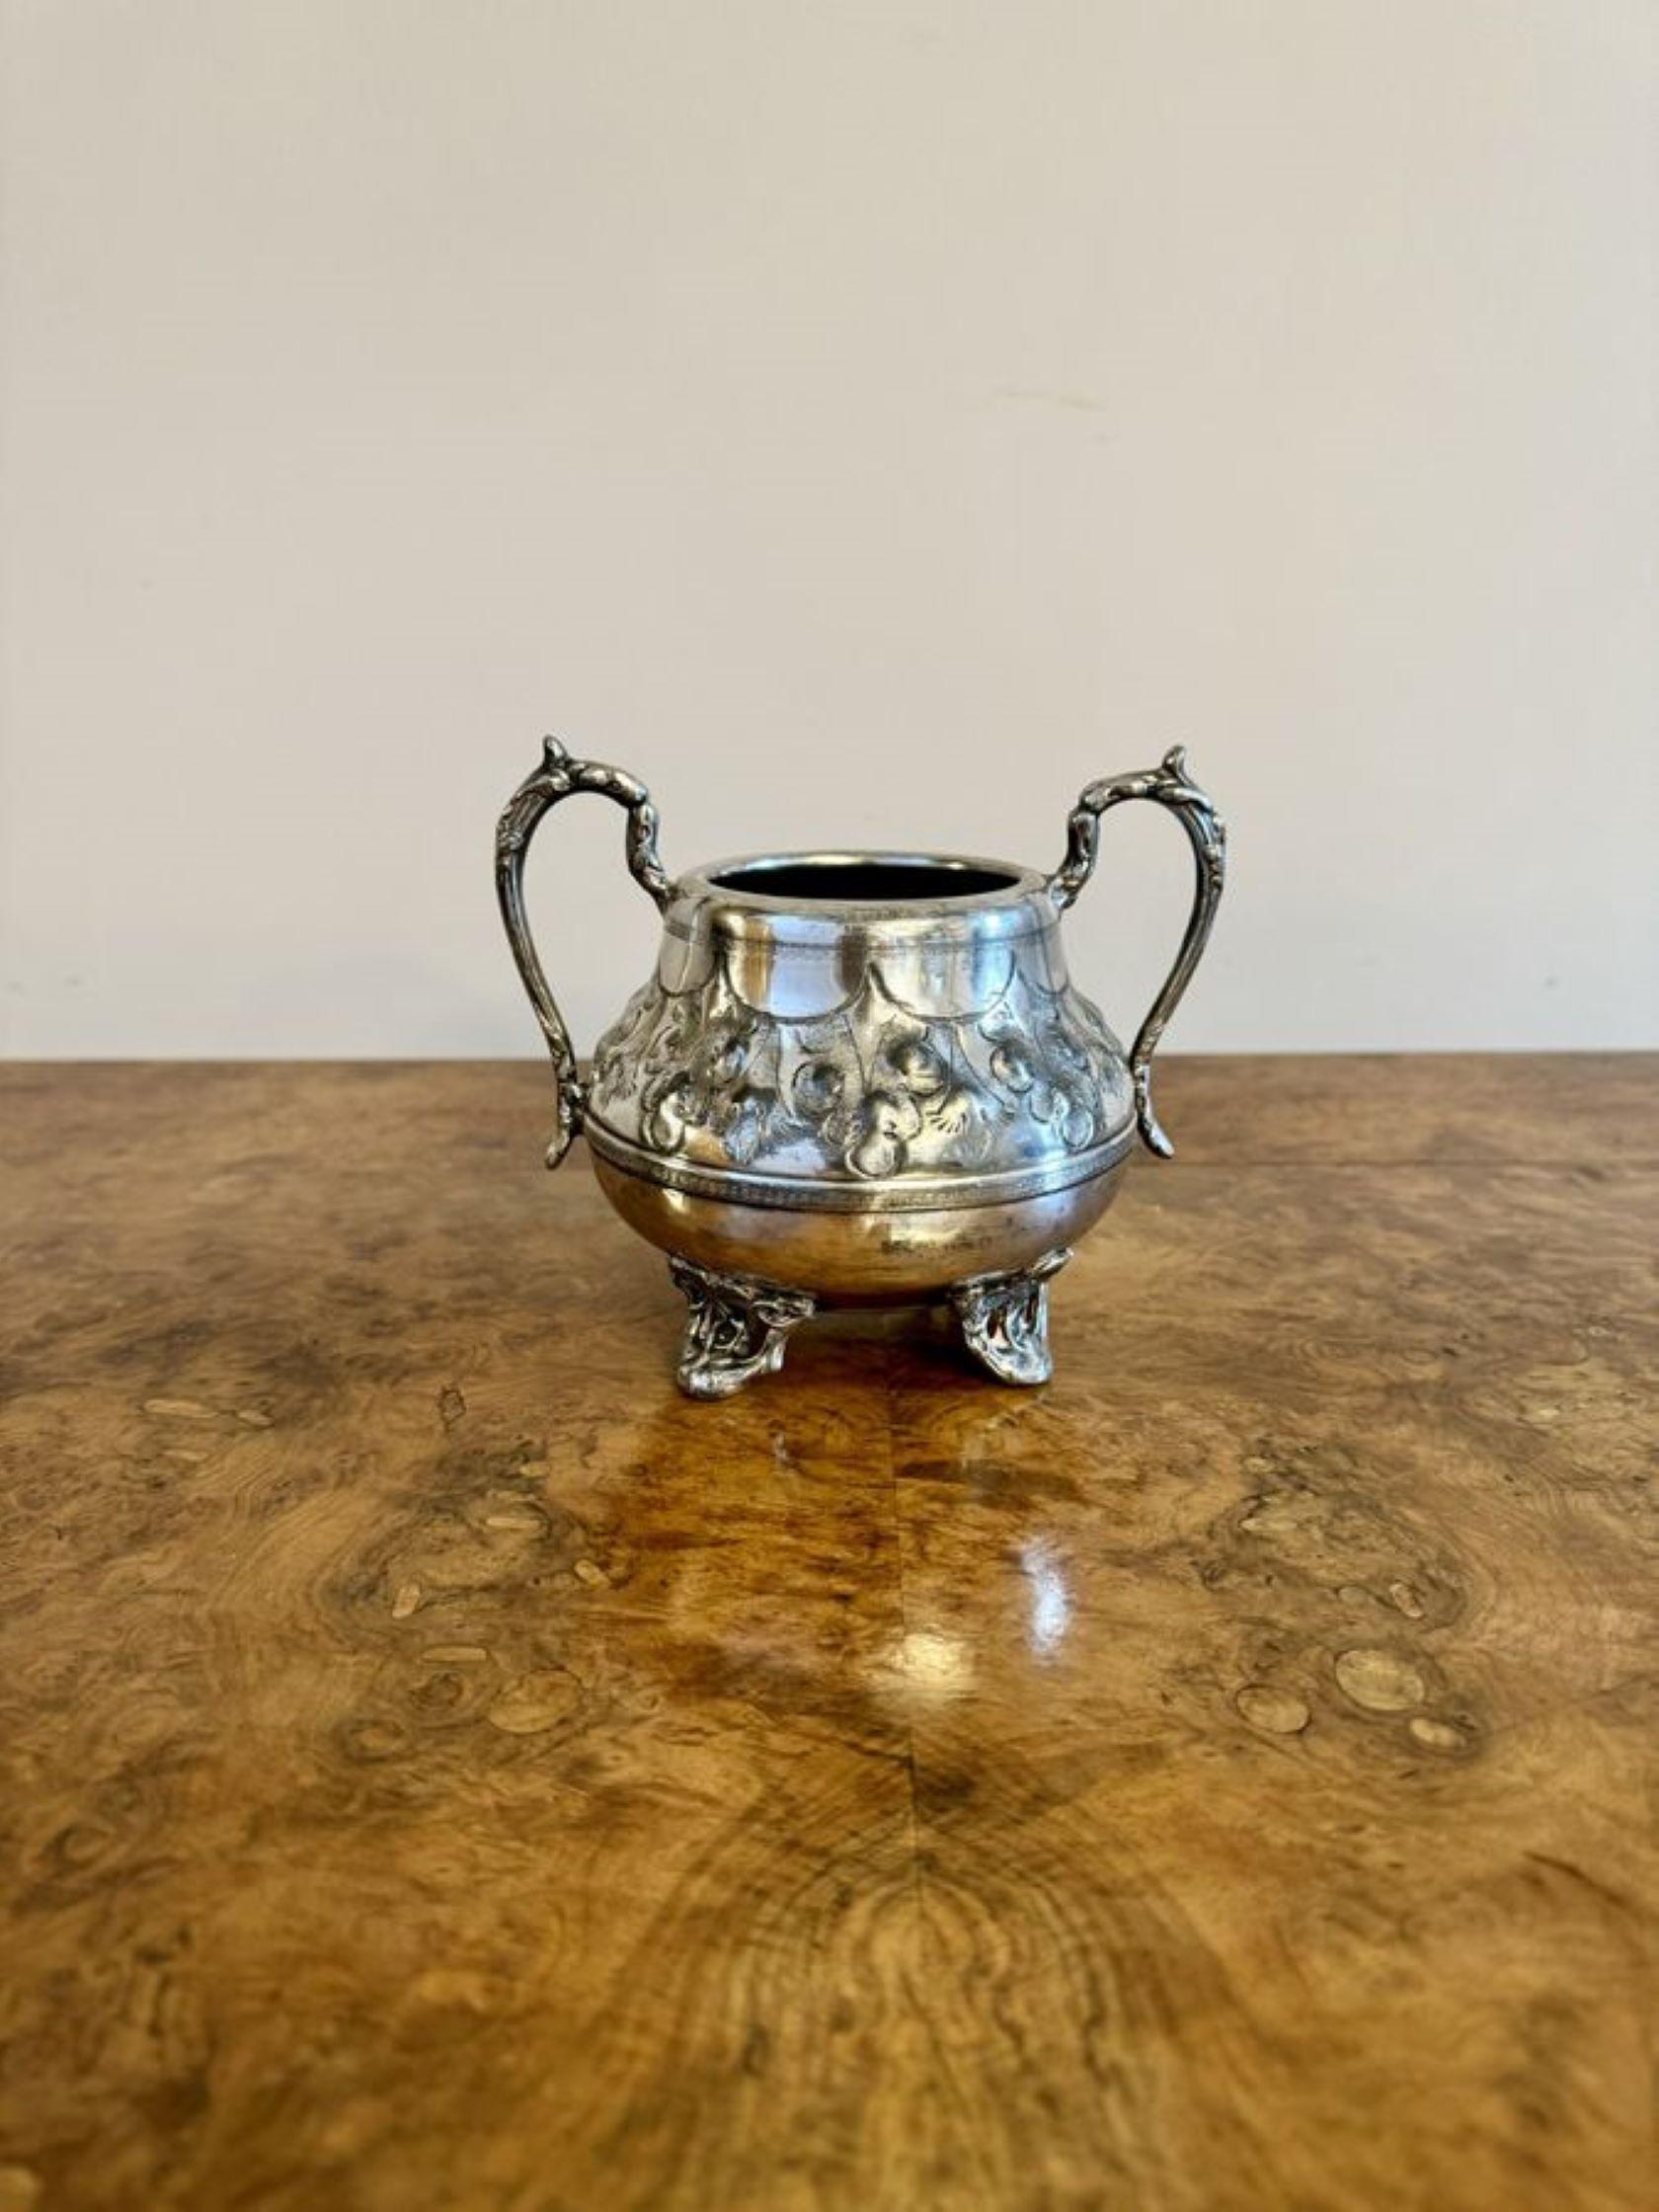 Wunderschönes antikes viktorianisches vierteiliges Teeset, bestehend aus einer Teekanne, einer Heißwasserkanne, einem Milchkännchen und einer Zuckerdose mit fabelhaften Details und den originalen Endstücken.

D. 1880